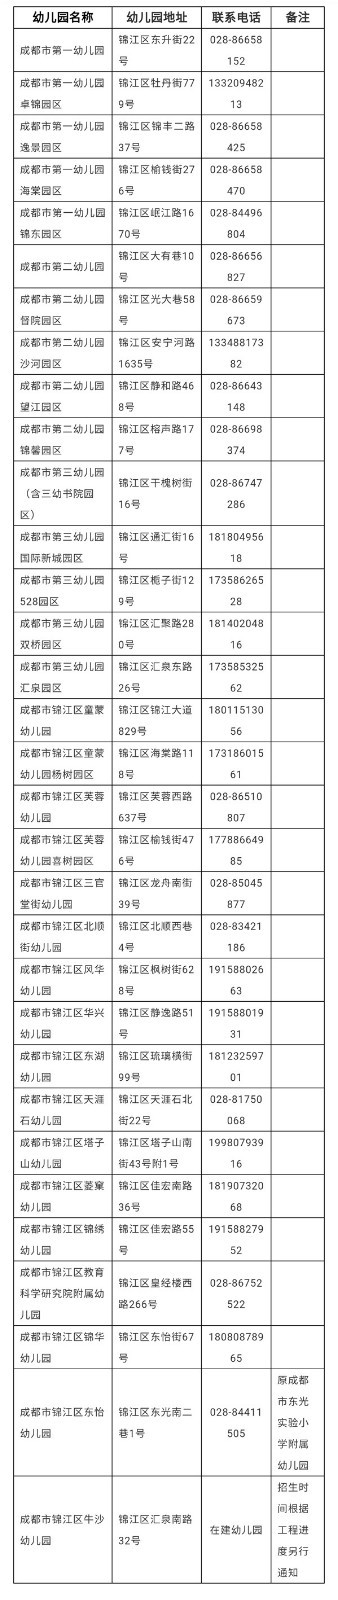 成都锦江区2021年教办幼儿园招生 5月17日起网上报名登记